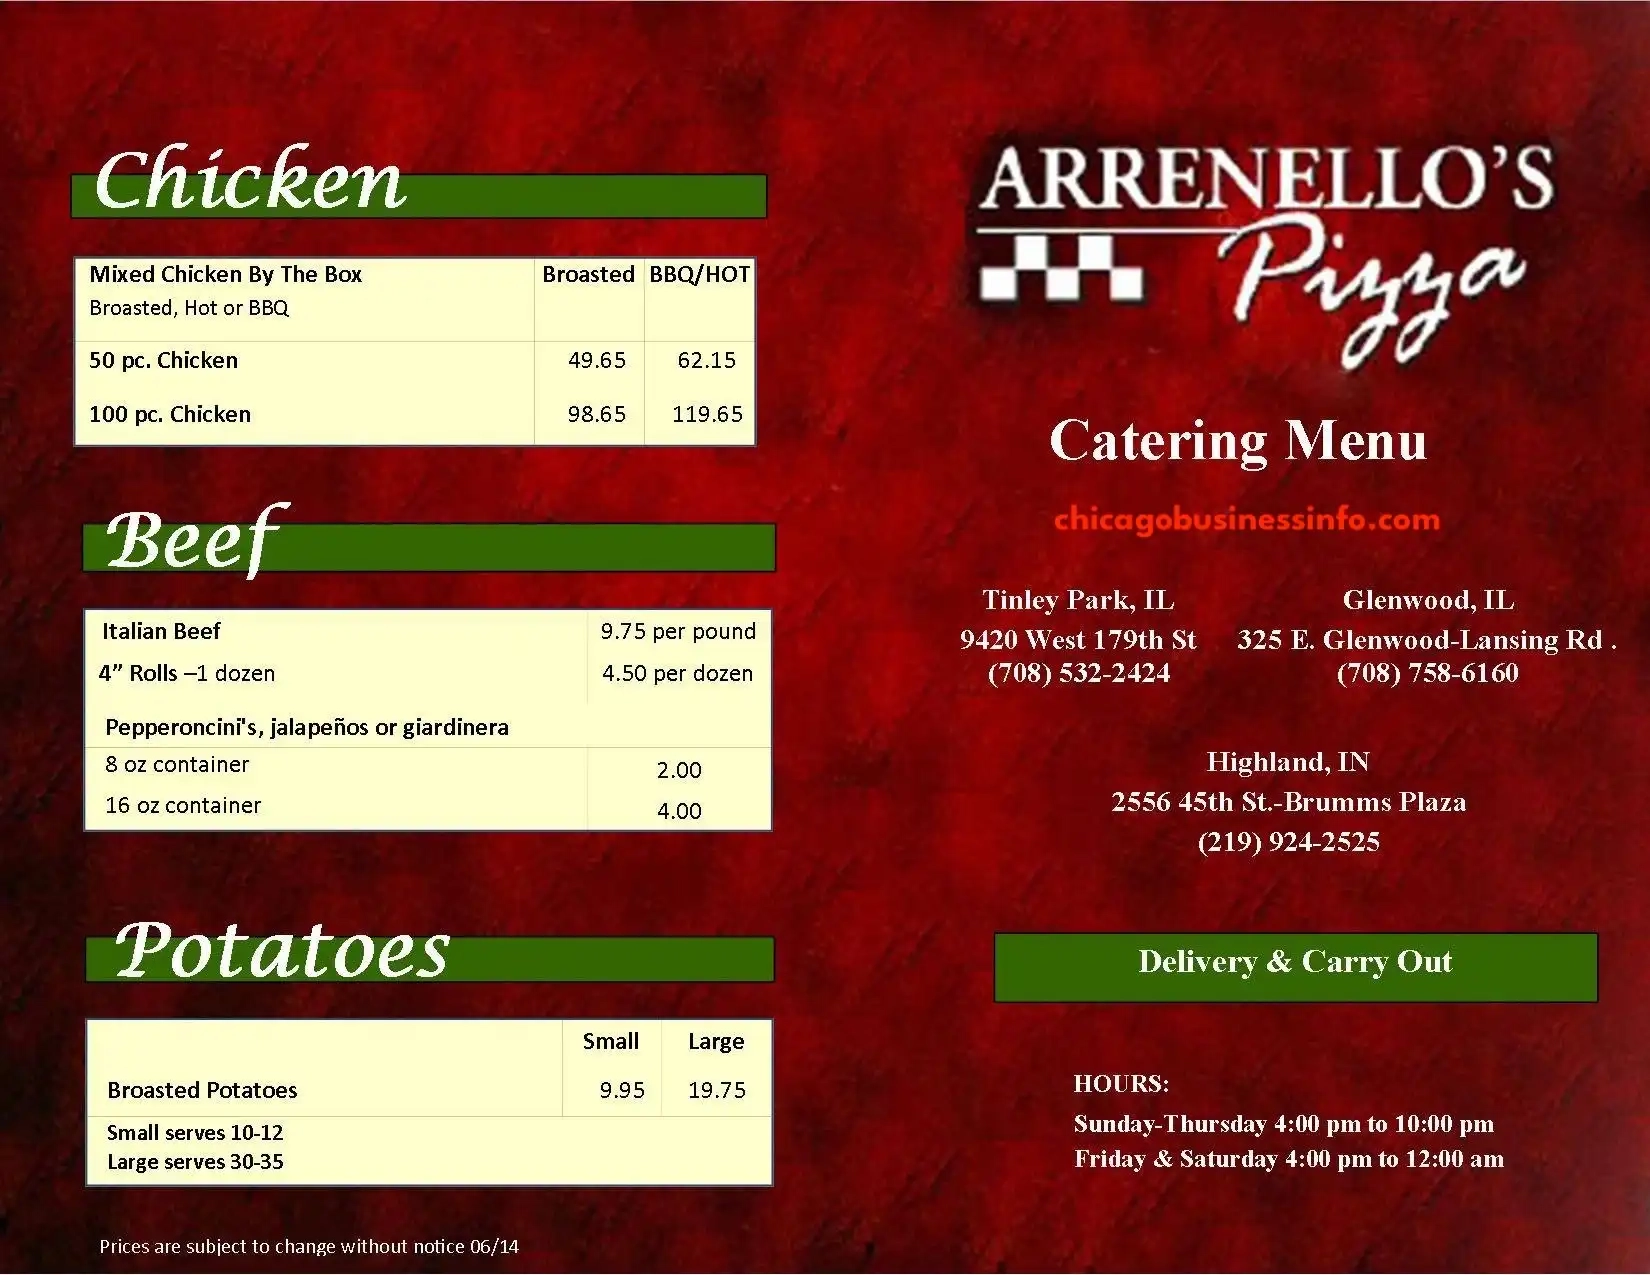 Arrenello's Pizza Catering Menu 1